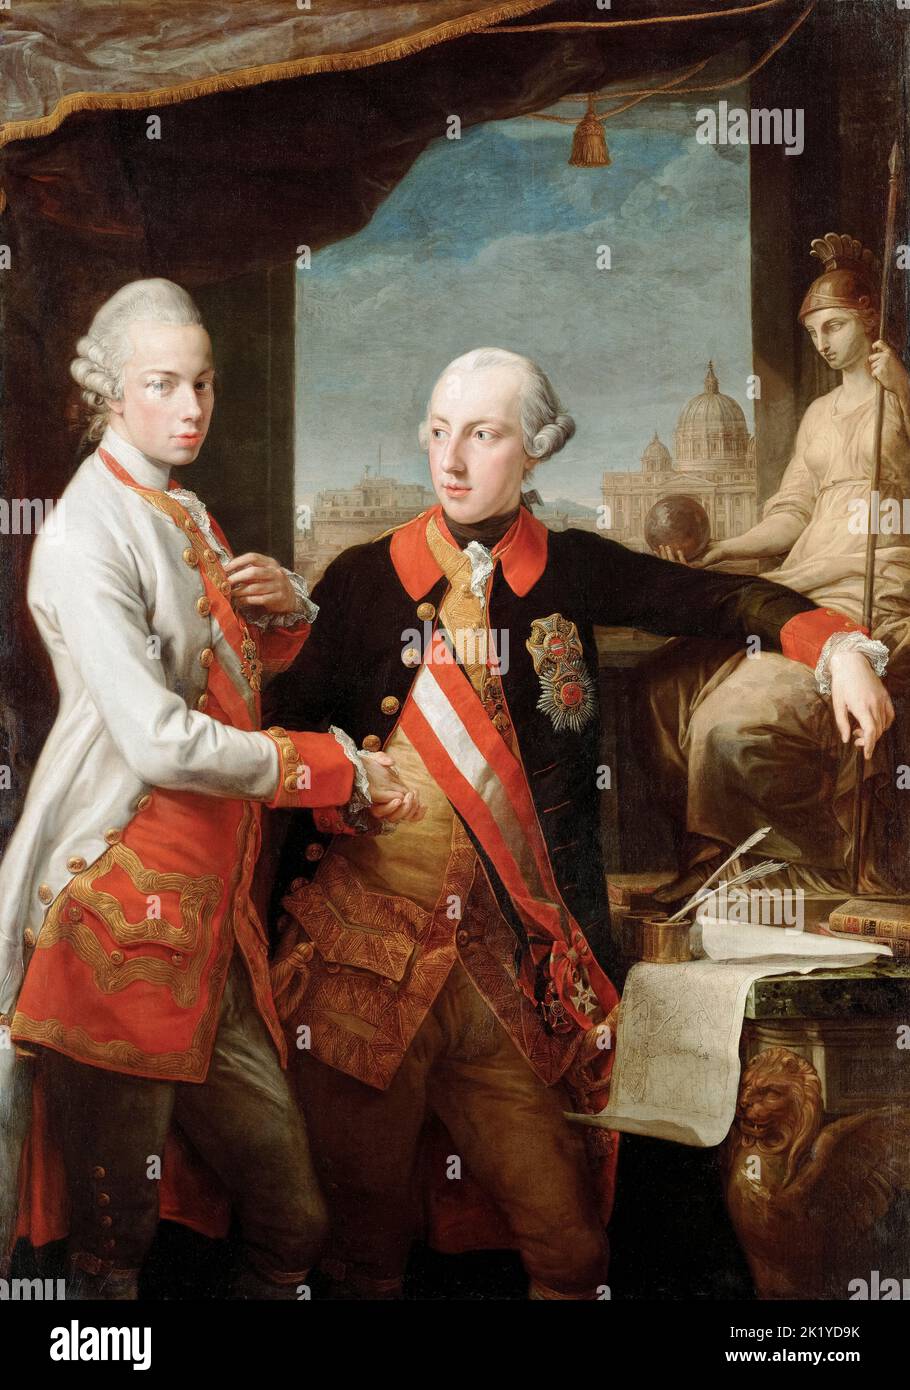 Joseph II (1741-1790), Saint empereur romain (1765-1790), avec son frère Peter Leopold (1747-1792), Grand duc de Toscane (1765-1790), plus tard Léopold II, Saint empereur romain (1790-1792), portrait peint à l'huile sur toile par Pompeo Batoni, 1769 Banque D'Images